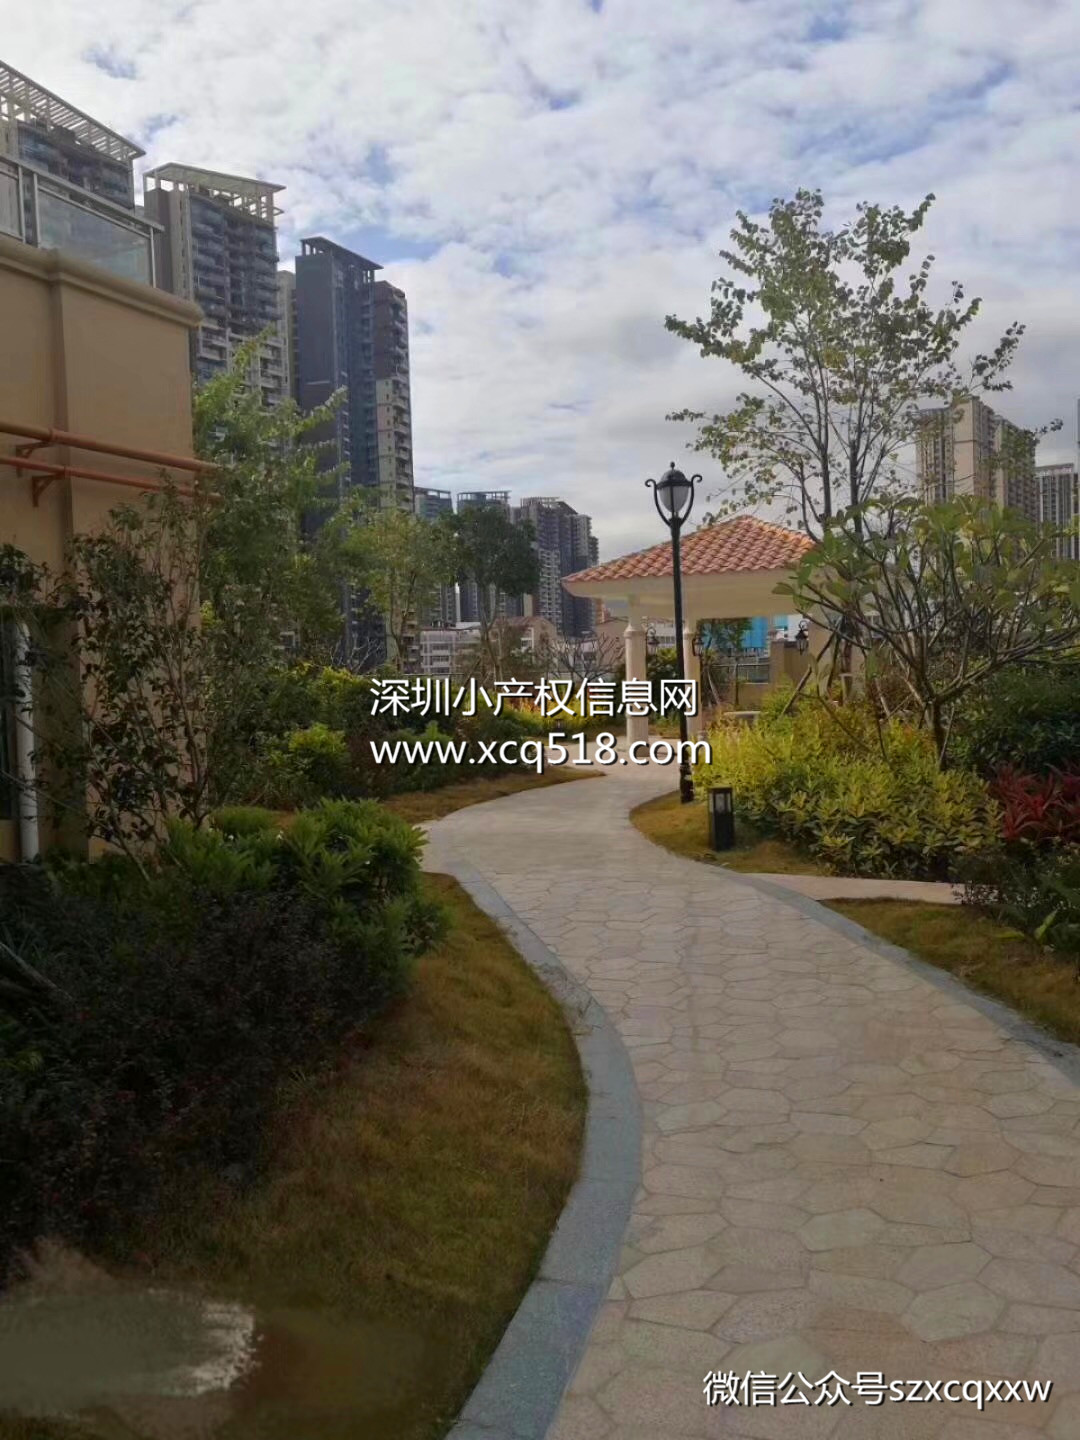 深圳坪山回迁房出售【中心花园】3栋500套大型花园社区 均价19500元